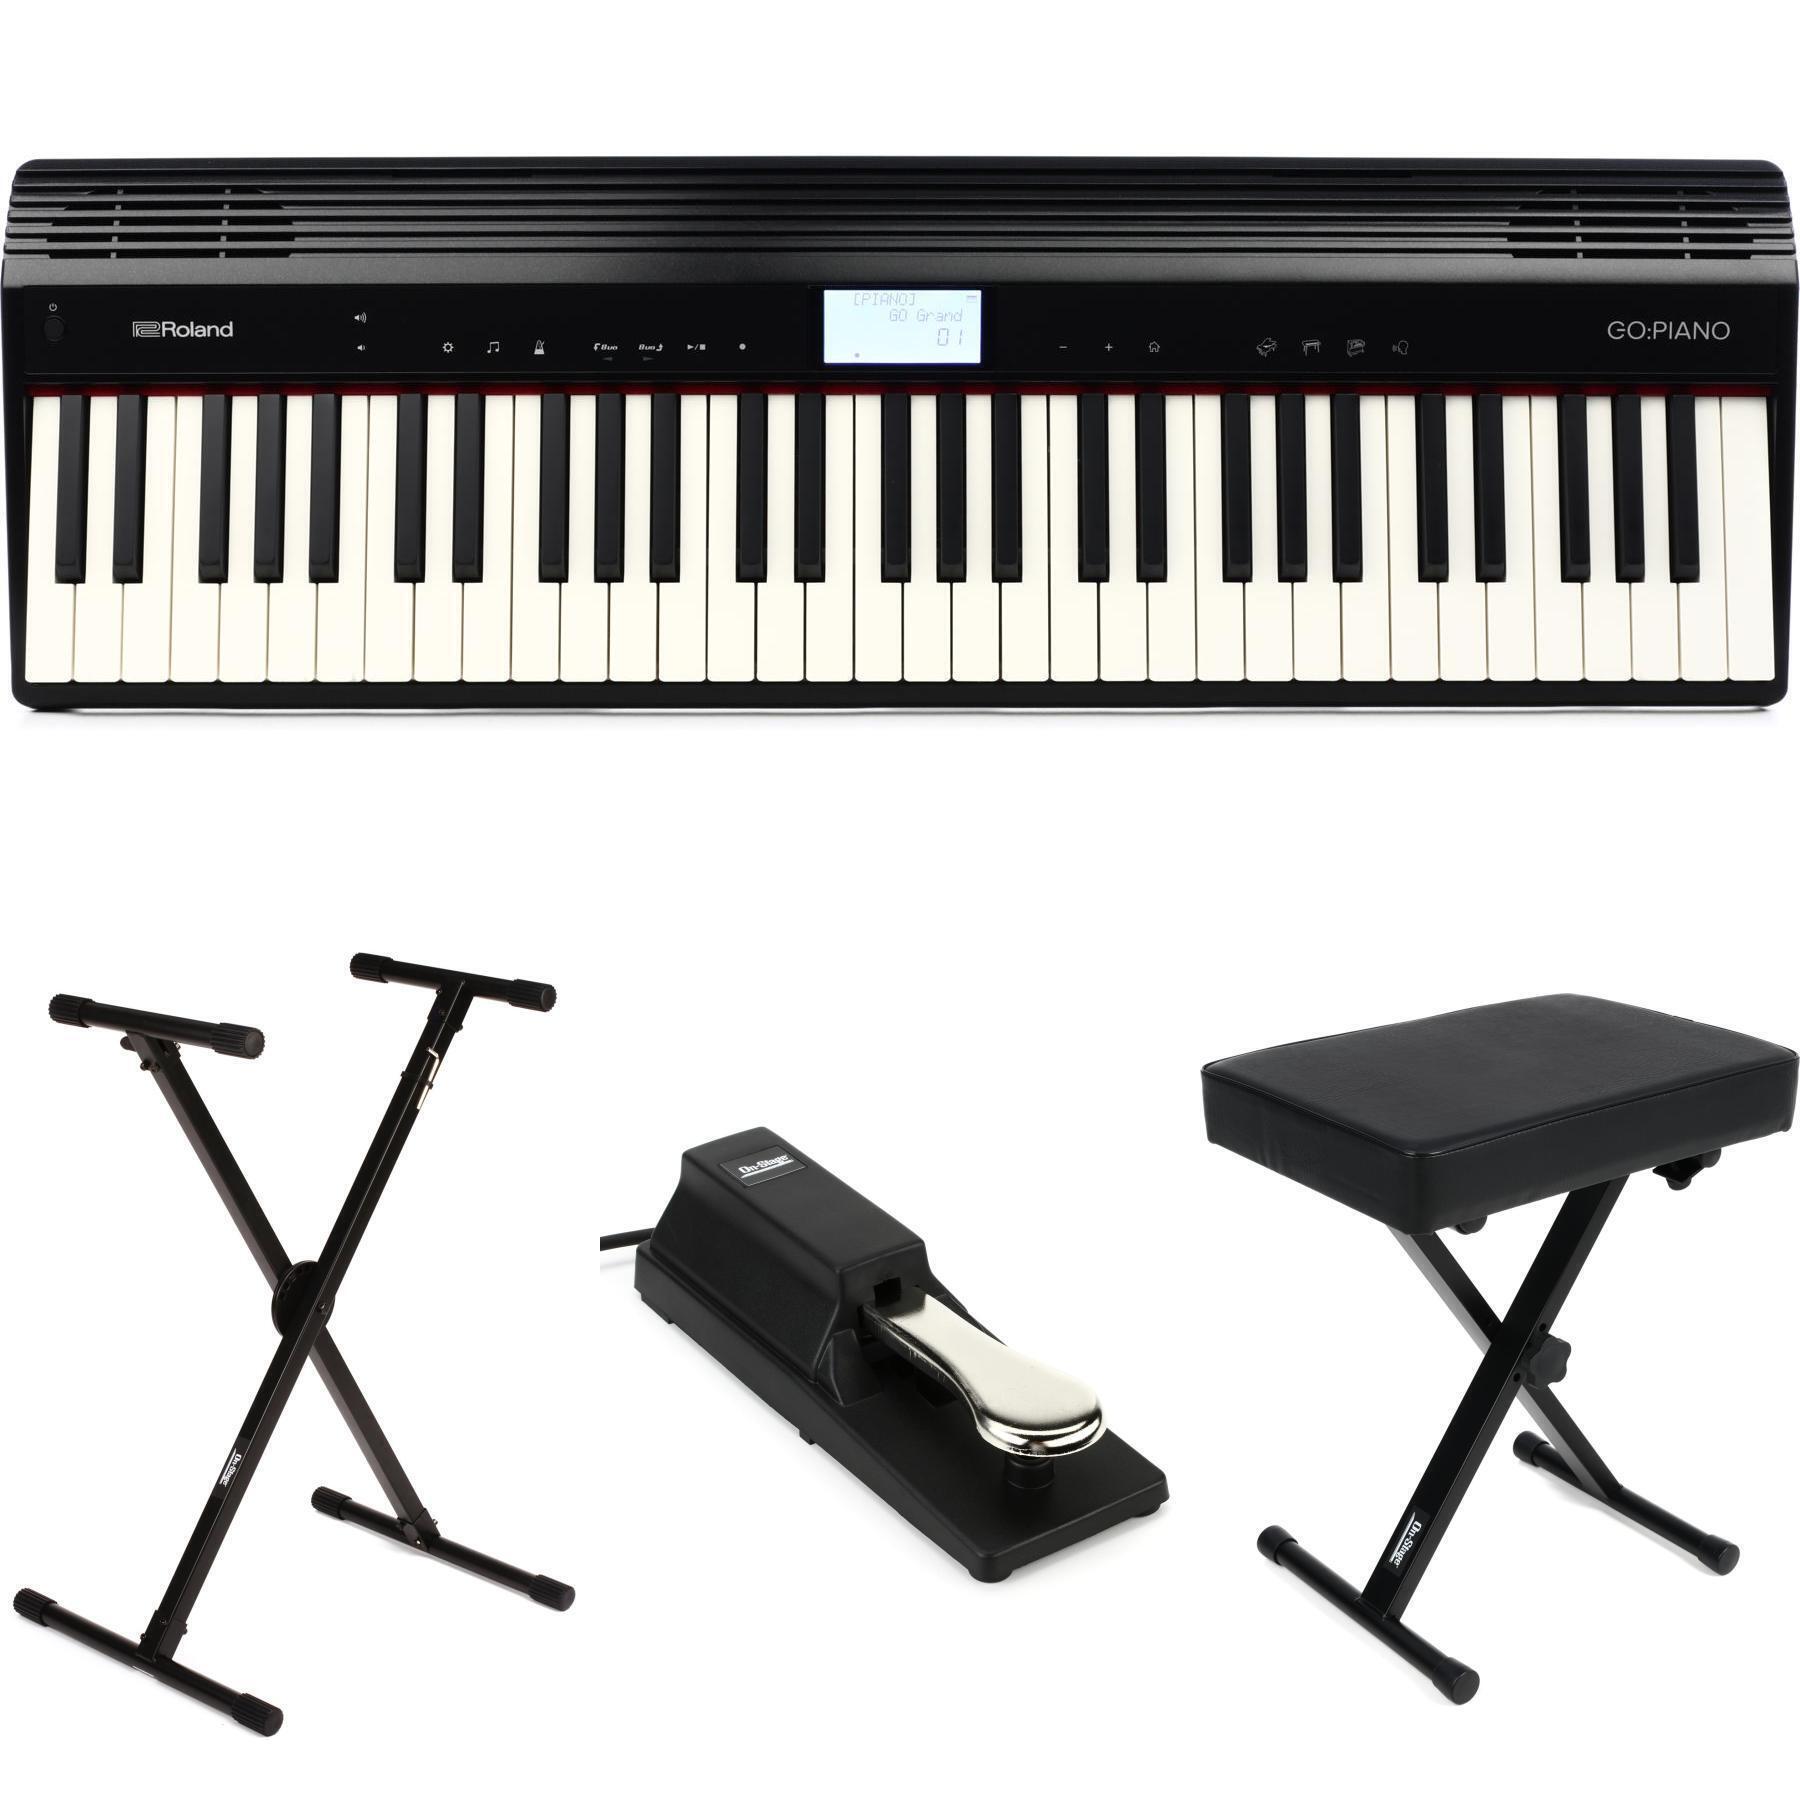 Roland GO:PIANO 61-key Portable Piano Essentials Bundle